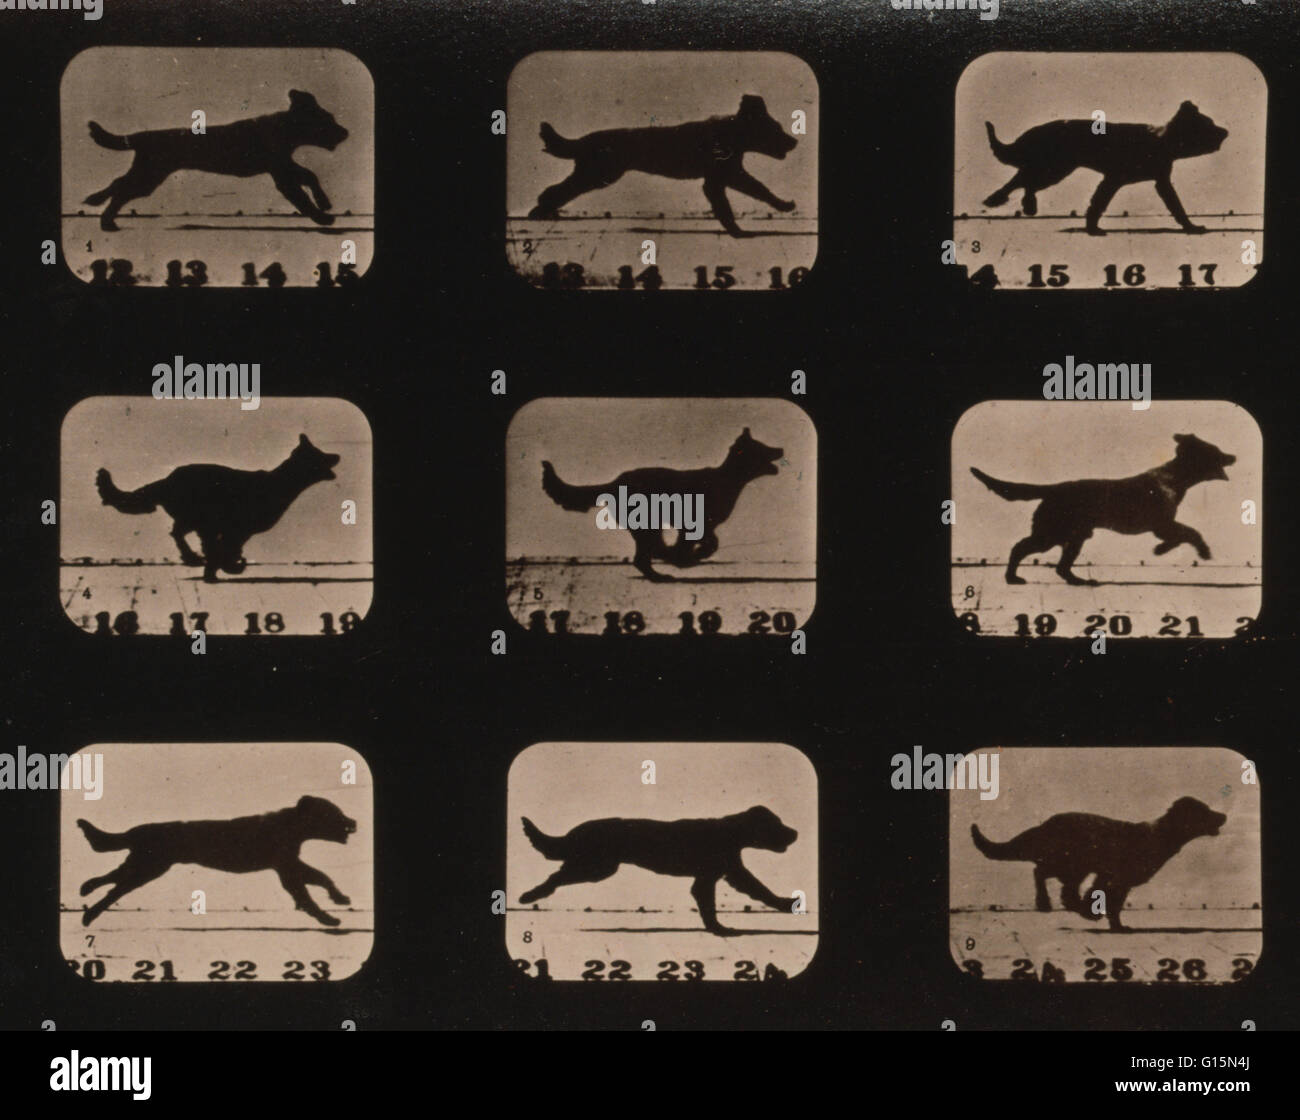 Muybridge Locomozione animale, cane in esecuzione, 1881. Fotografia mostra 9 immagini consecutive di un cane in esecuzione. James Eadweard Muybridge (9 aprile 1830 - 8 Maggio 1904) era un fotografo inglese importante per il suo lavoro pionieristico in studi fotografici di movimento Foto Stock